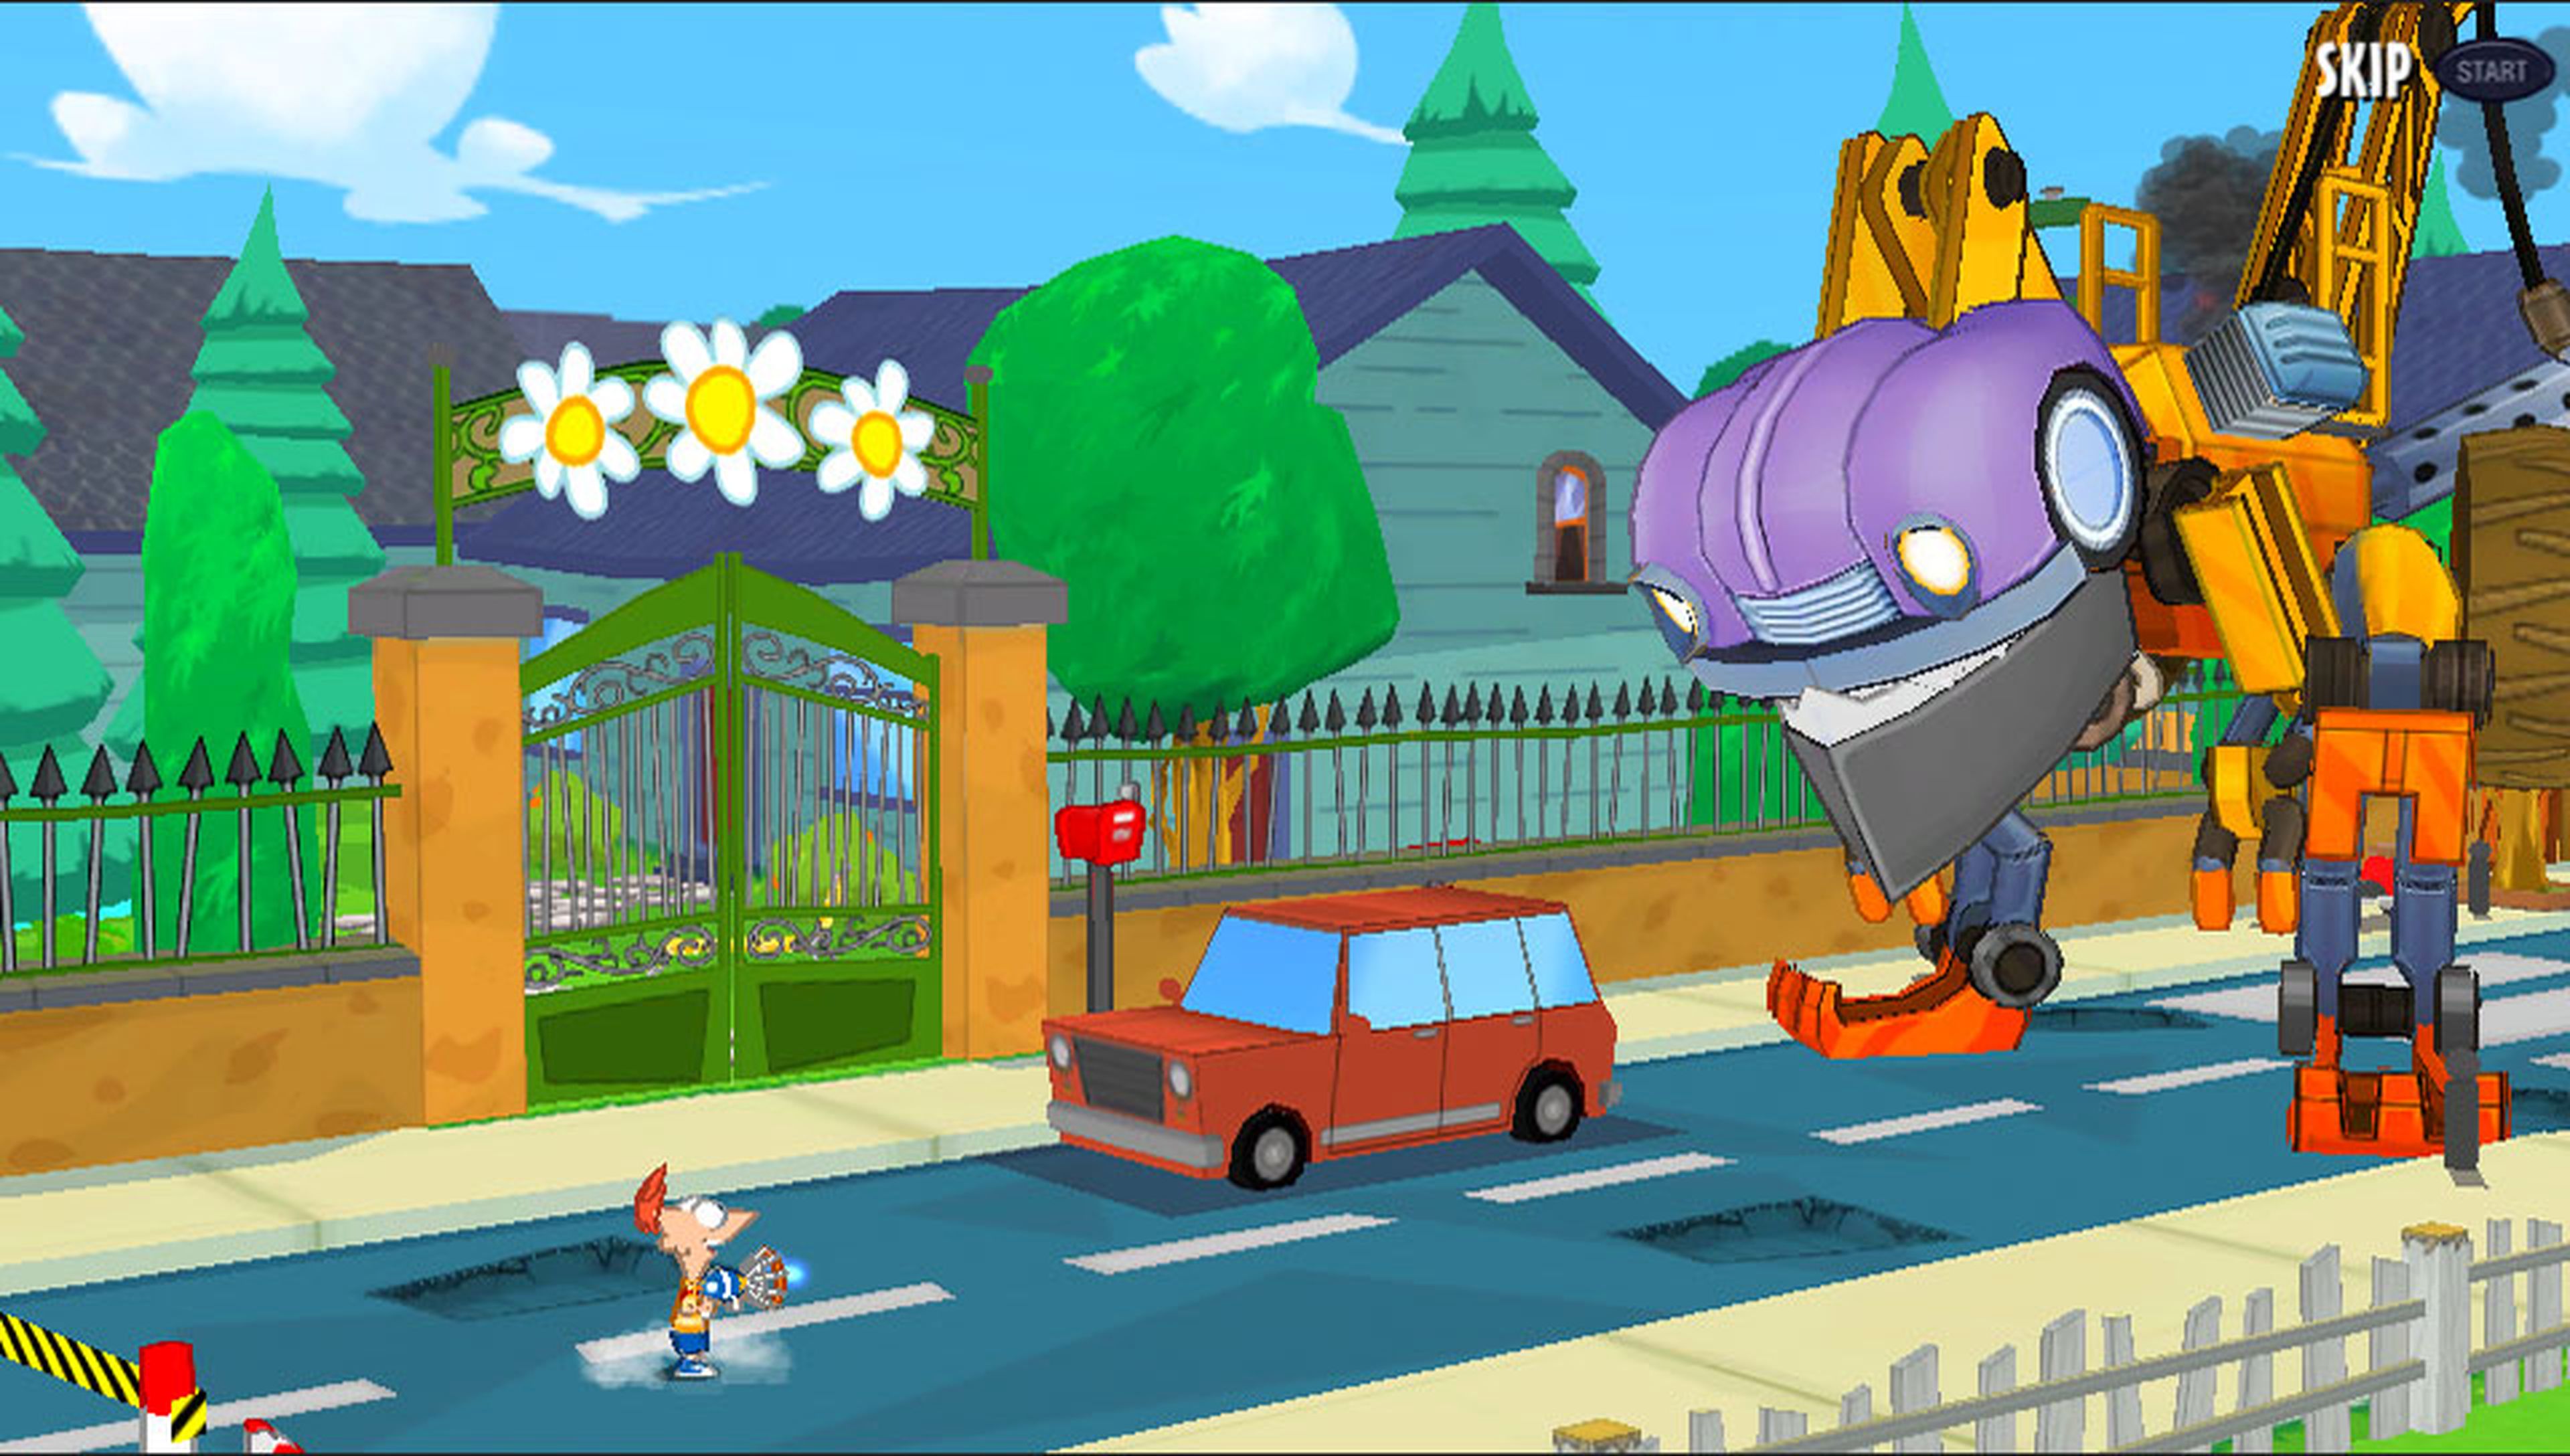 La diversión en Phineas y Ferb: El Día de Doofenshmirtz está asegurada gracias a poder pilotar naves, huir de volcanes en erupción...